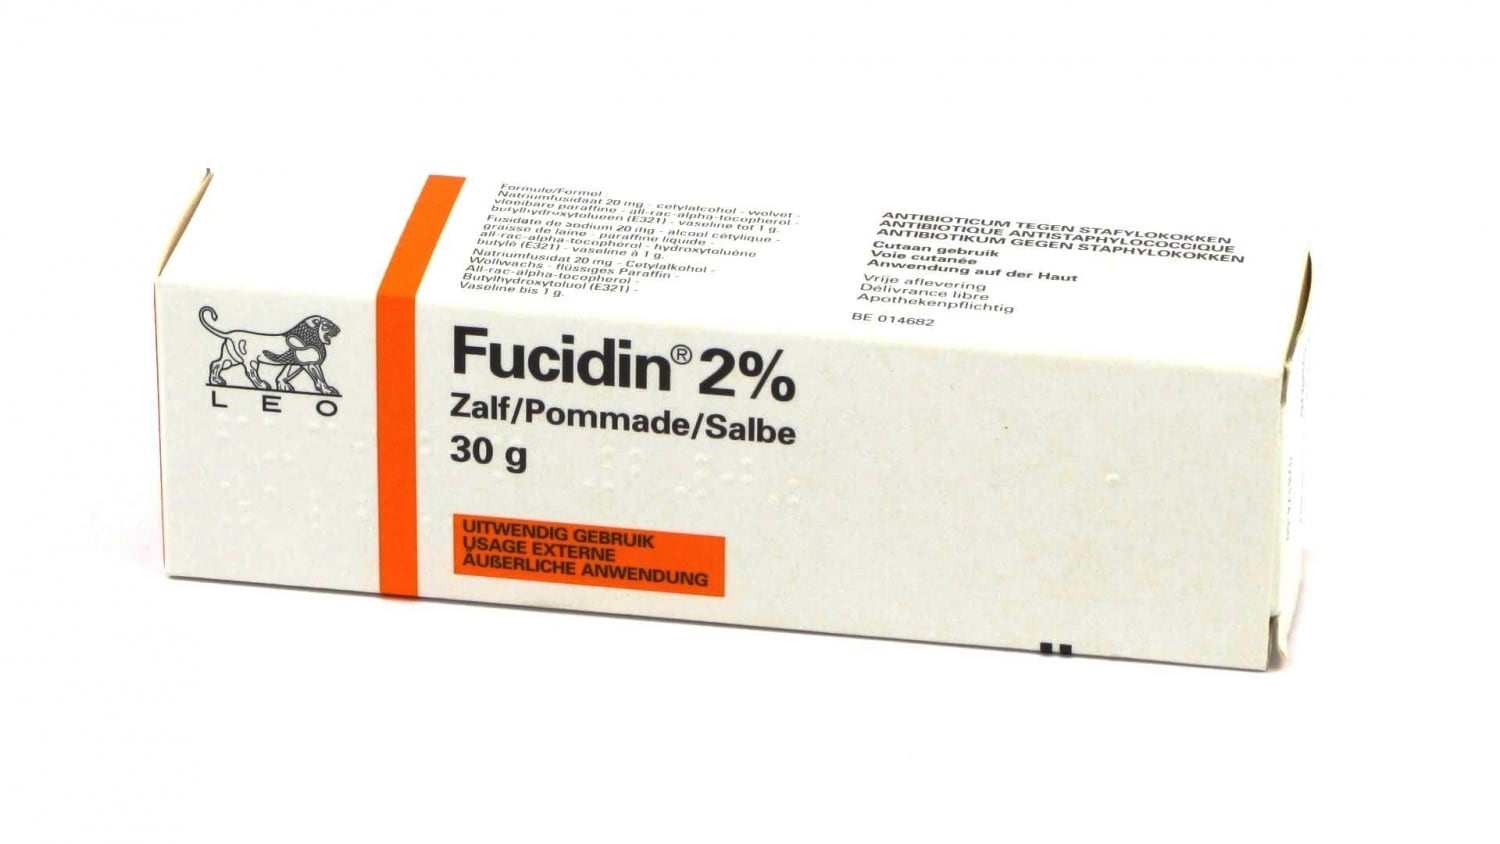 Fucidin Zalf 2%